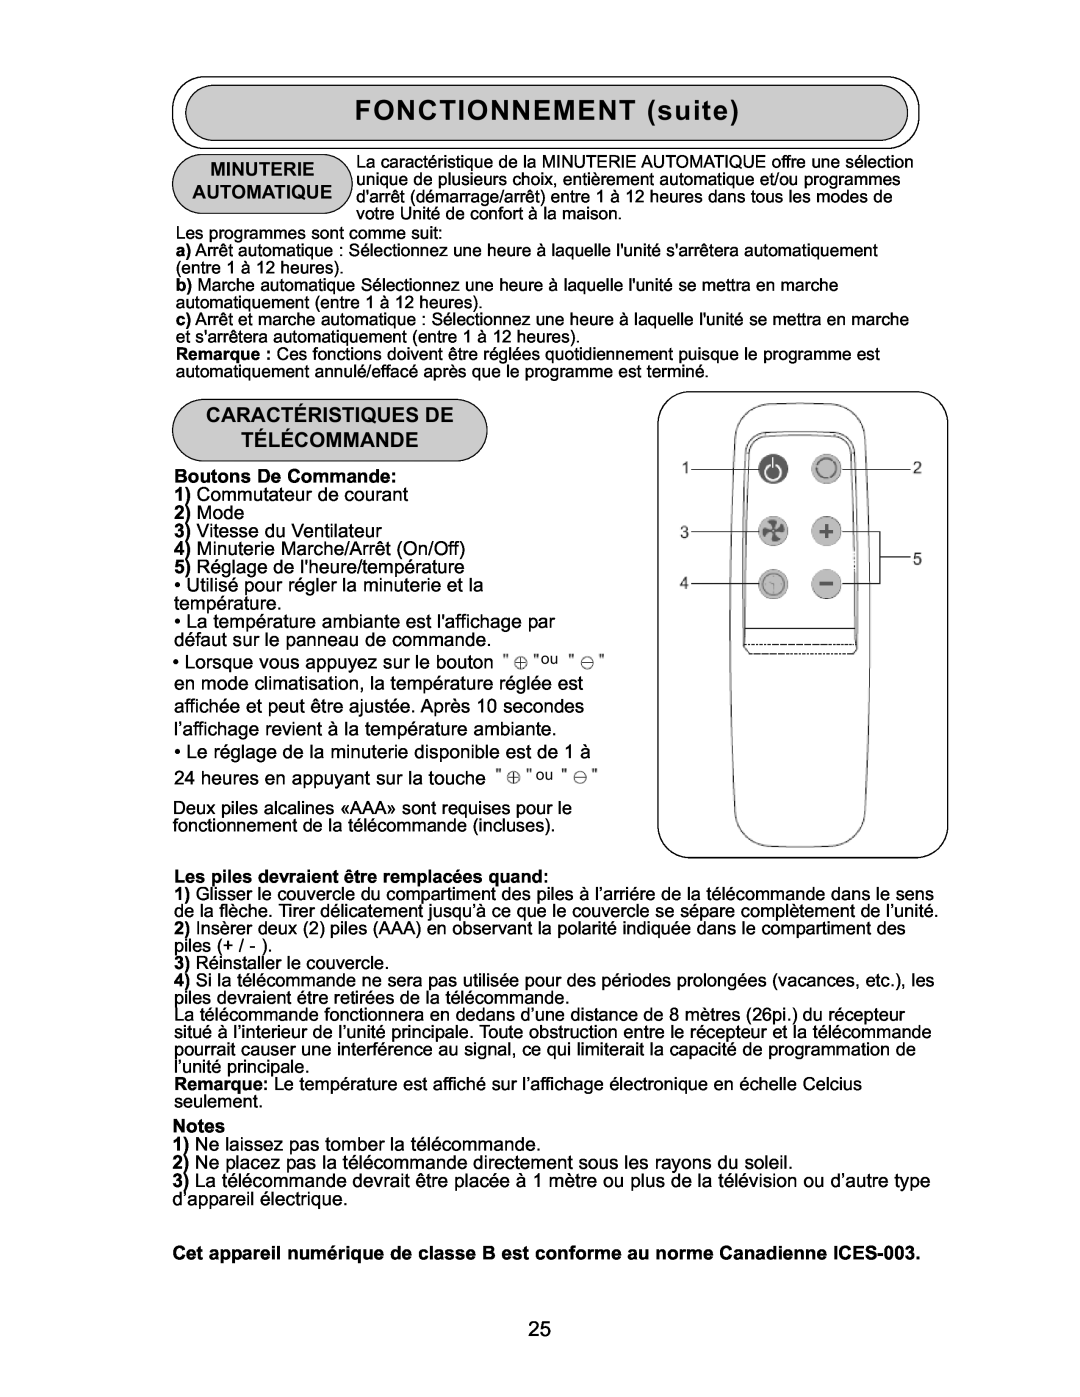 Danby DPAC 9009 manual FONCTIONNEMENT suite, Minuterie Automatique, Boutons De Commande 